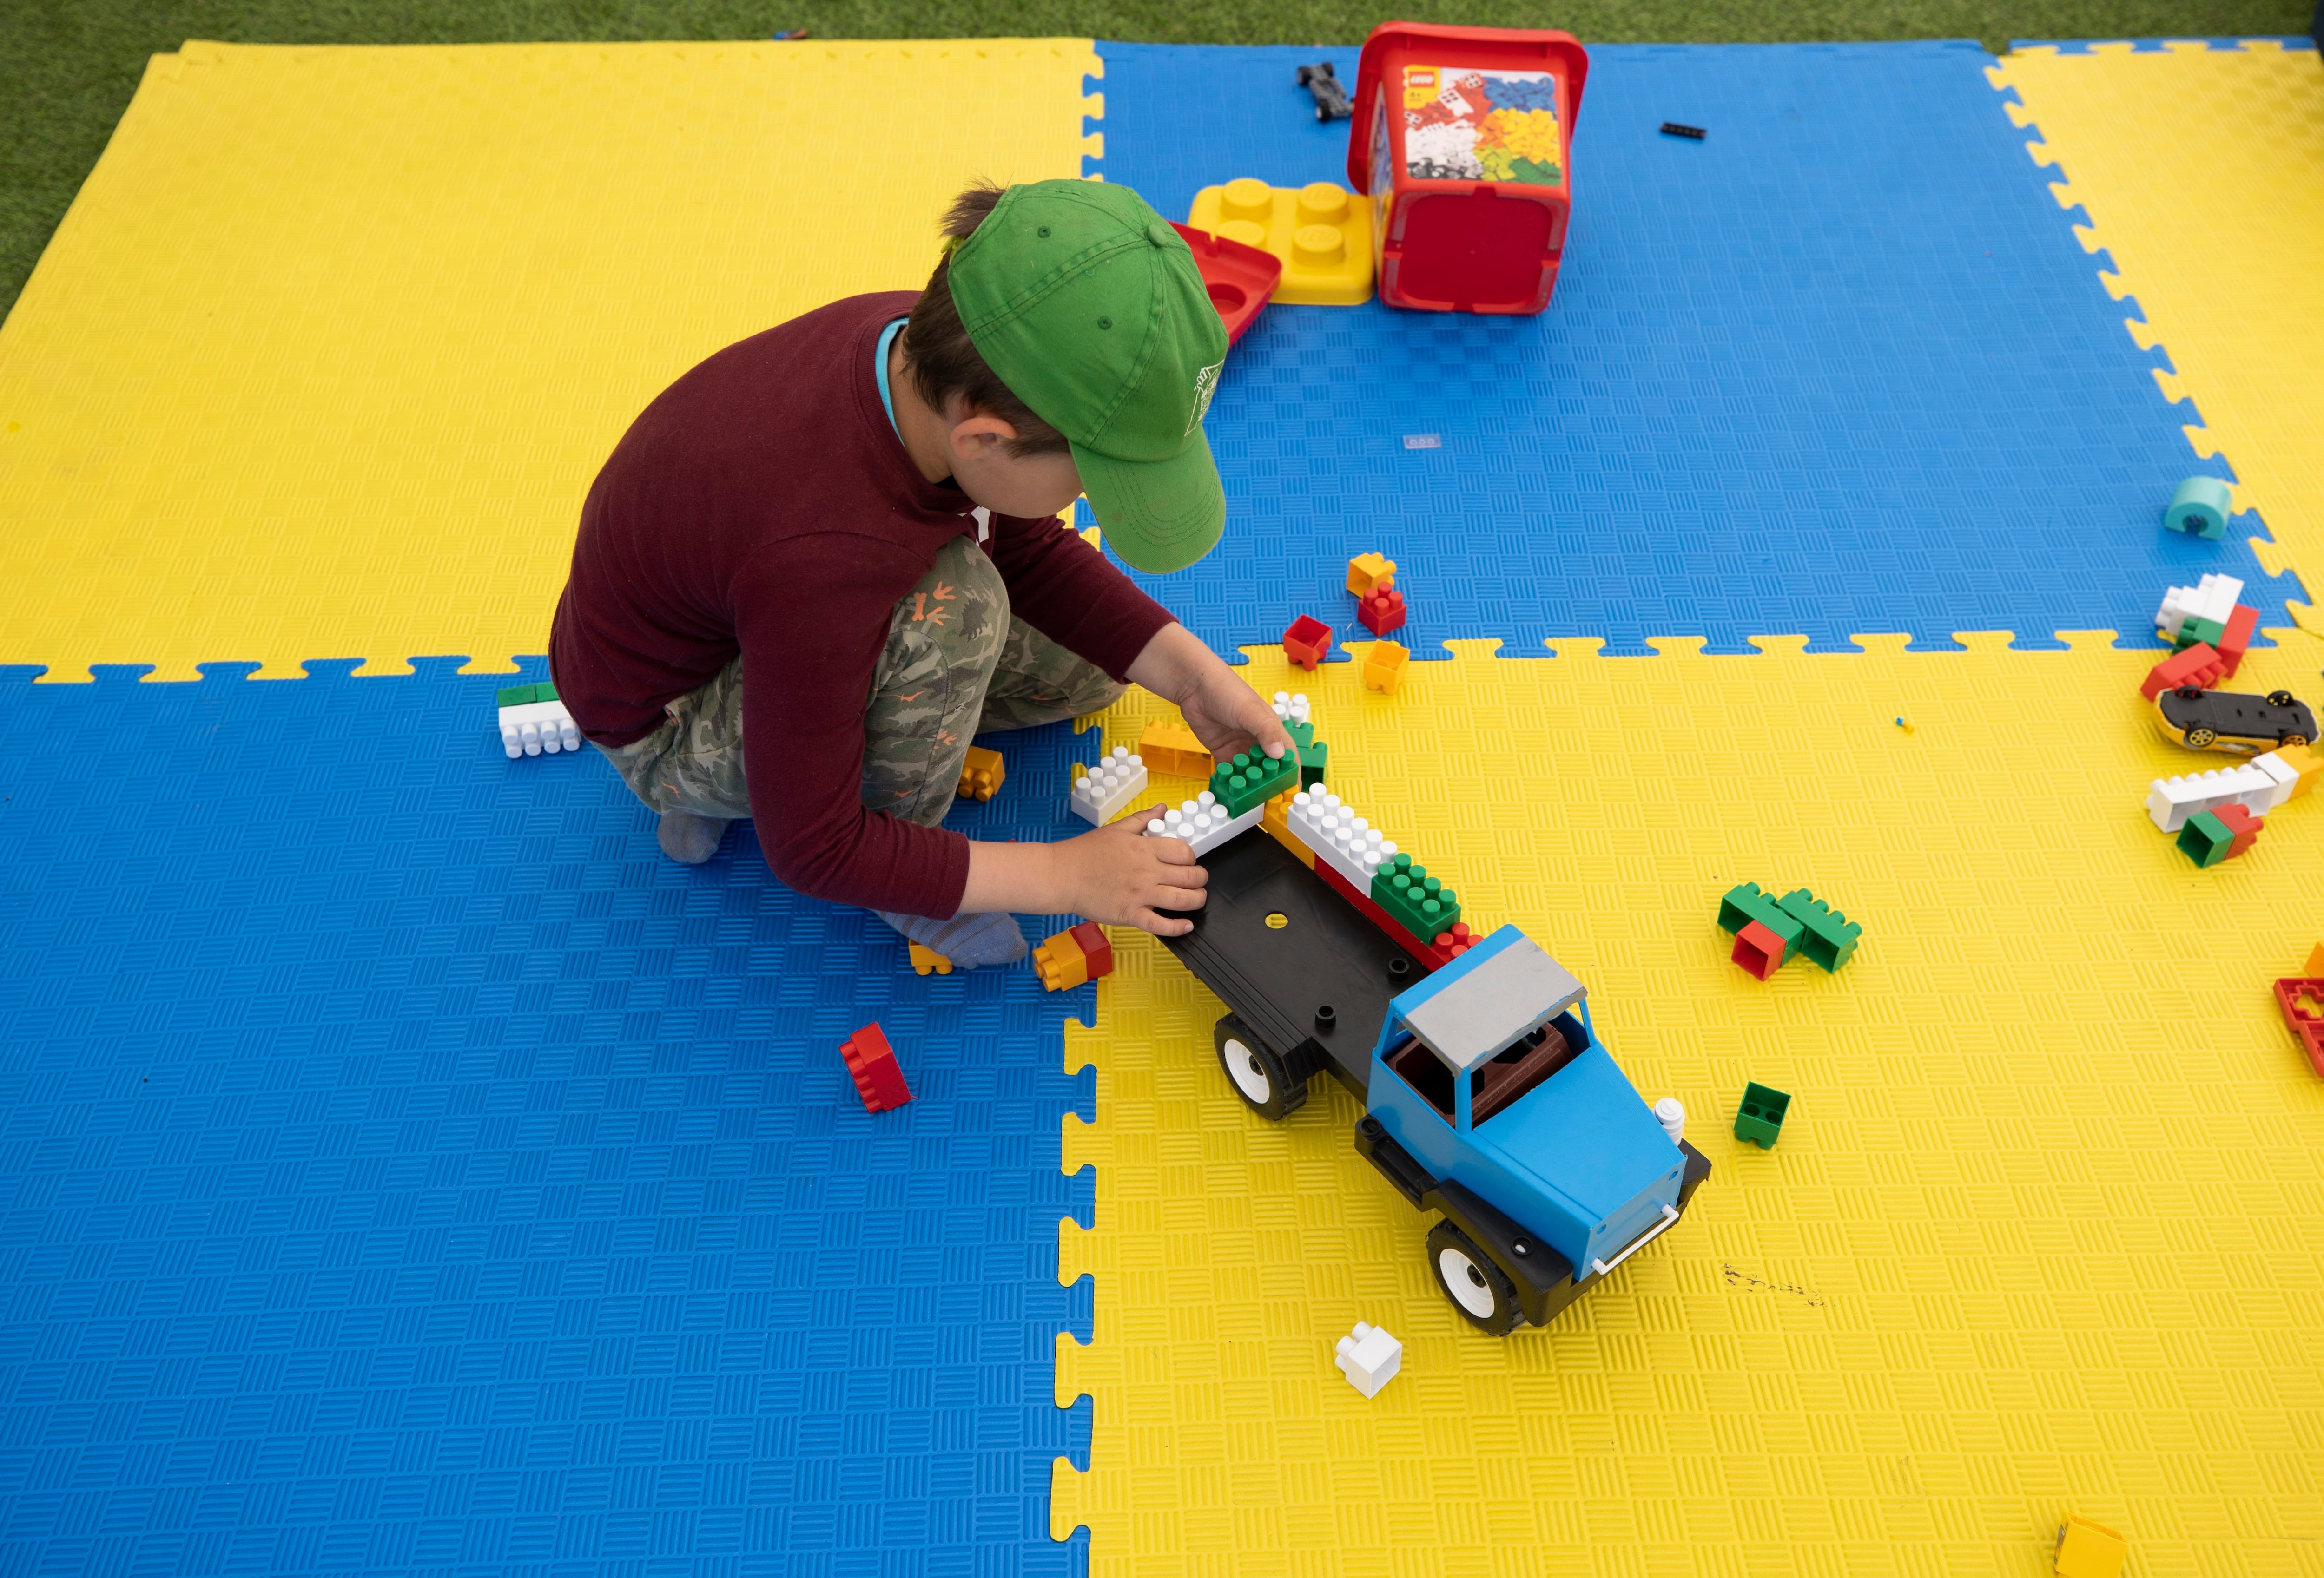 juego niño 2 años – Centro de Neuropsicología